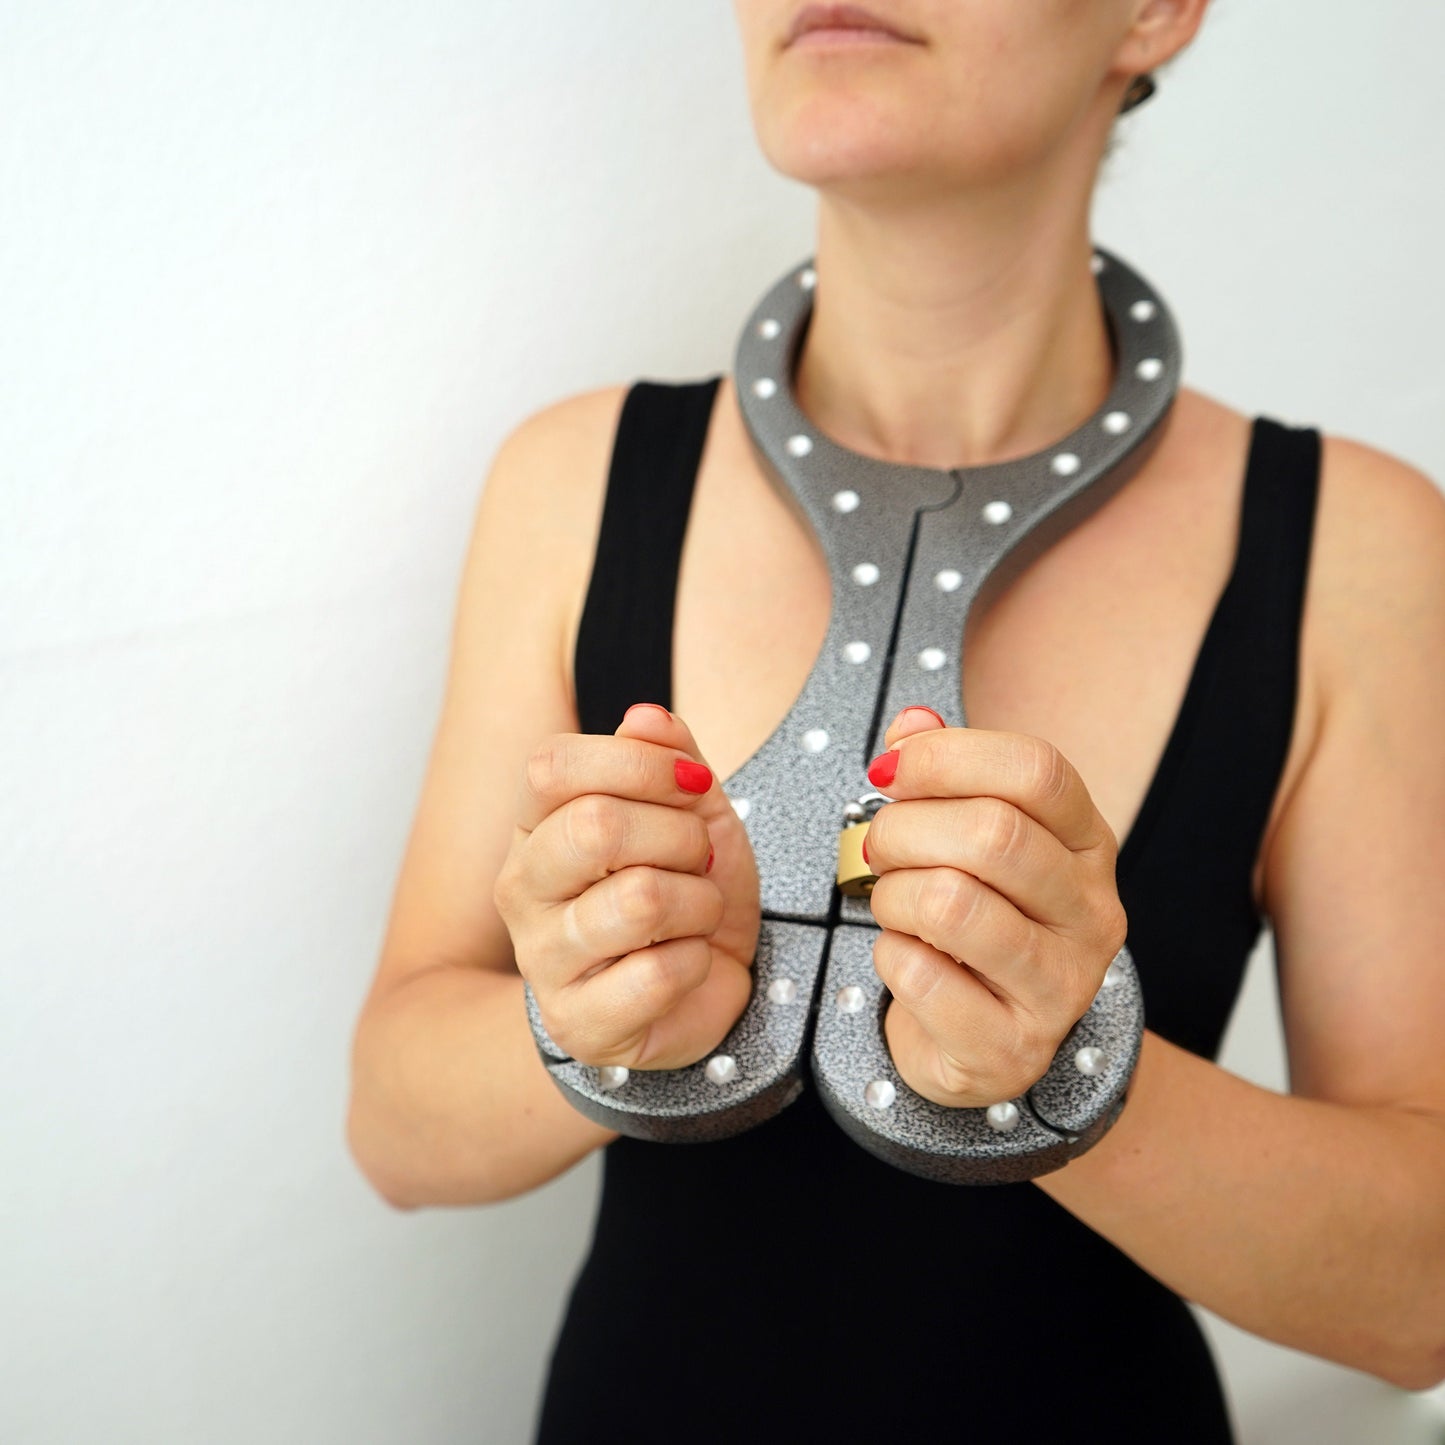 Aluminum bondage shrew´s fiddle yoke for neck and hands